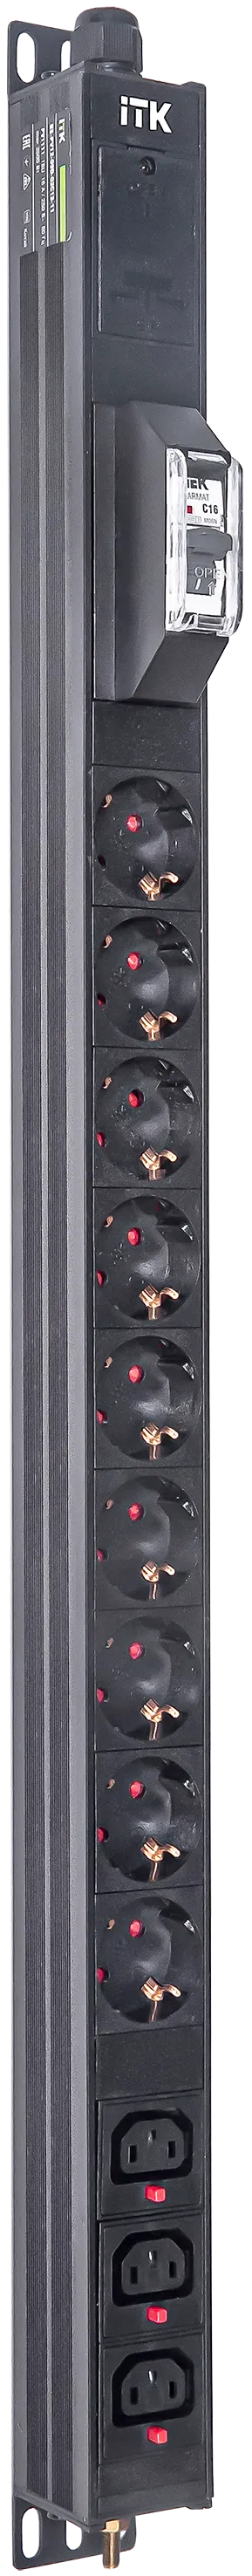 Вертикальный комбинированный блок распределения питания PDU ITK включает в себя розетки двух типов: 9 розеток Schuko и 3 розетки C13 – что позволяет подключать с их помощью различное оборудование. PDU ITK изготавливается из высококачественных термостойких материалов и пластмасс, оснащается 2,6 метровым кабелем электропитания с вилкой Schuko. PDU ITK прекрасно справляется с задачей по электроснабжению сетевого оборудования в шкафах и стойках, а также с требованием защиты от токов короткого замыкания и перенапряжения. PDU ITK соответствует российским и международным стандартам качества и устанавливается с помощью кронштейнов, при этом положение кронштейнов можно менять, либо безынструментальным методом при помощи монтажных штифтов.